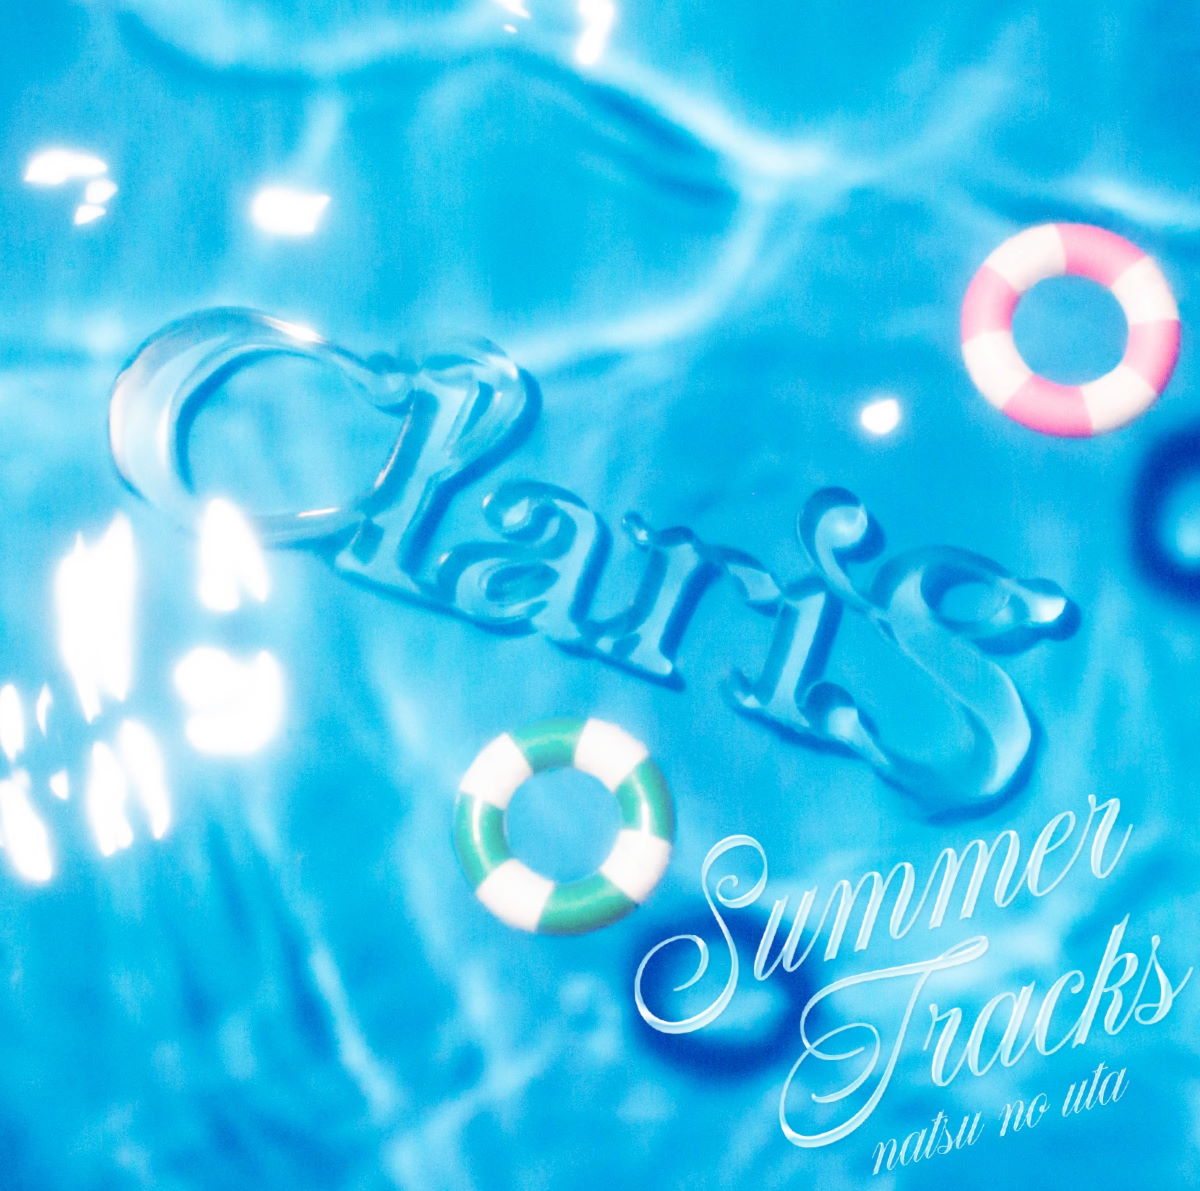 『ClariS - 恋のバカンス 歌詞』収録の『SUMMER TRACKS -夏のうた-』ジャケット